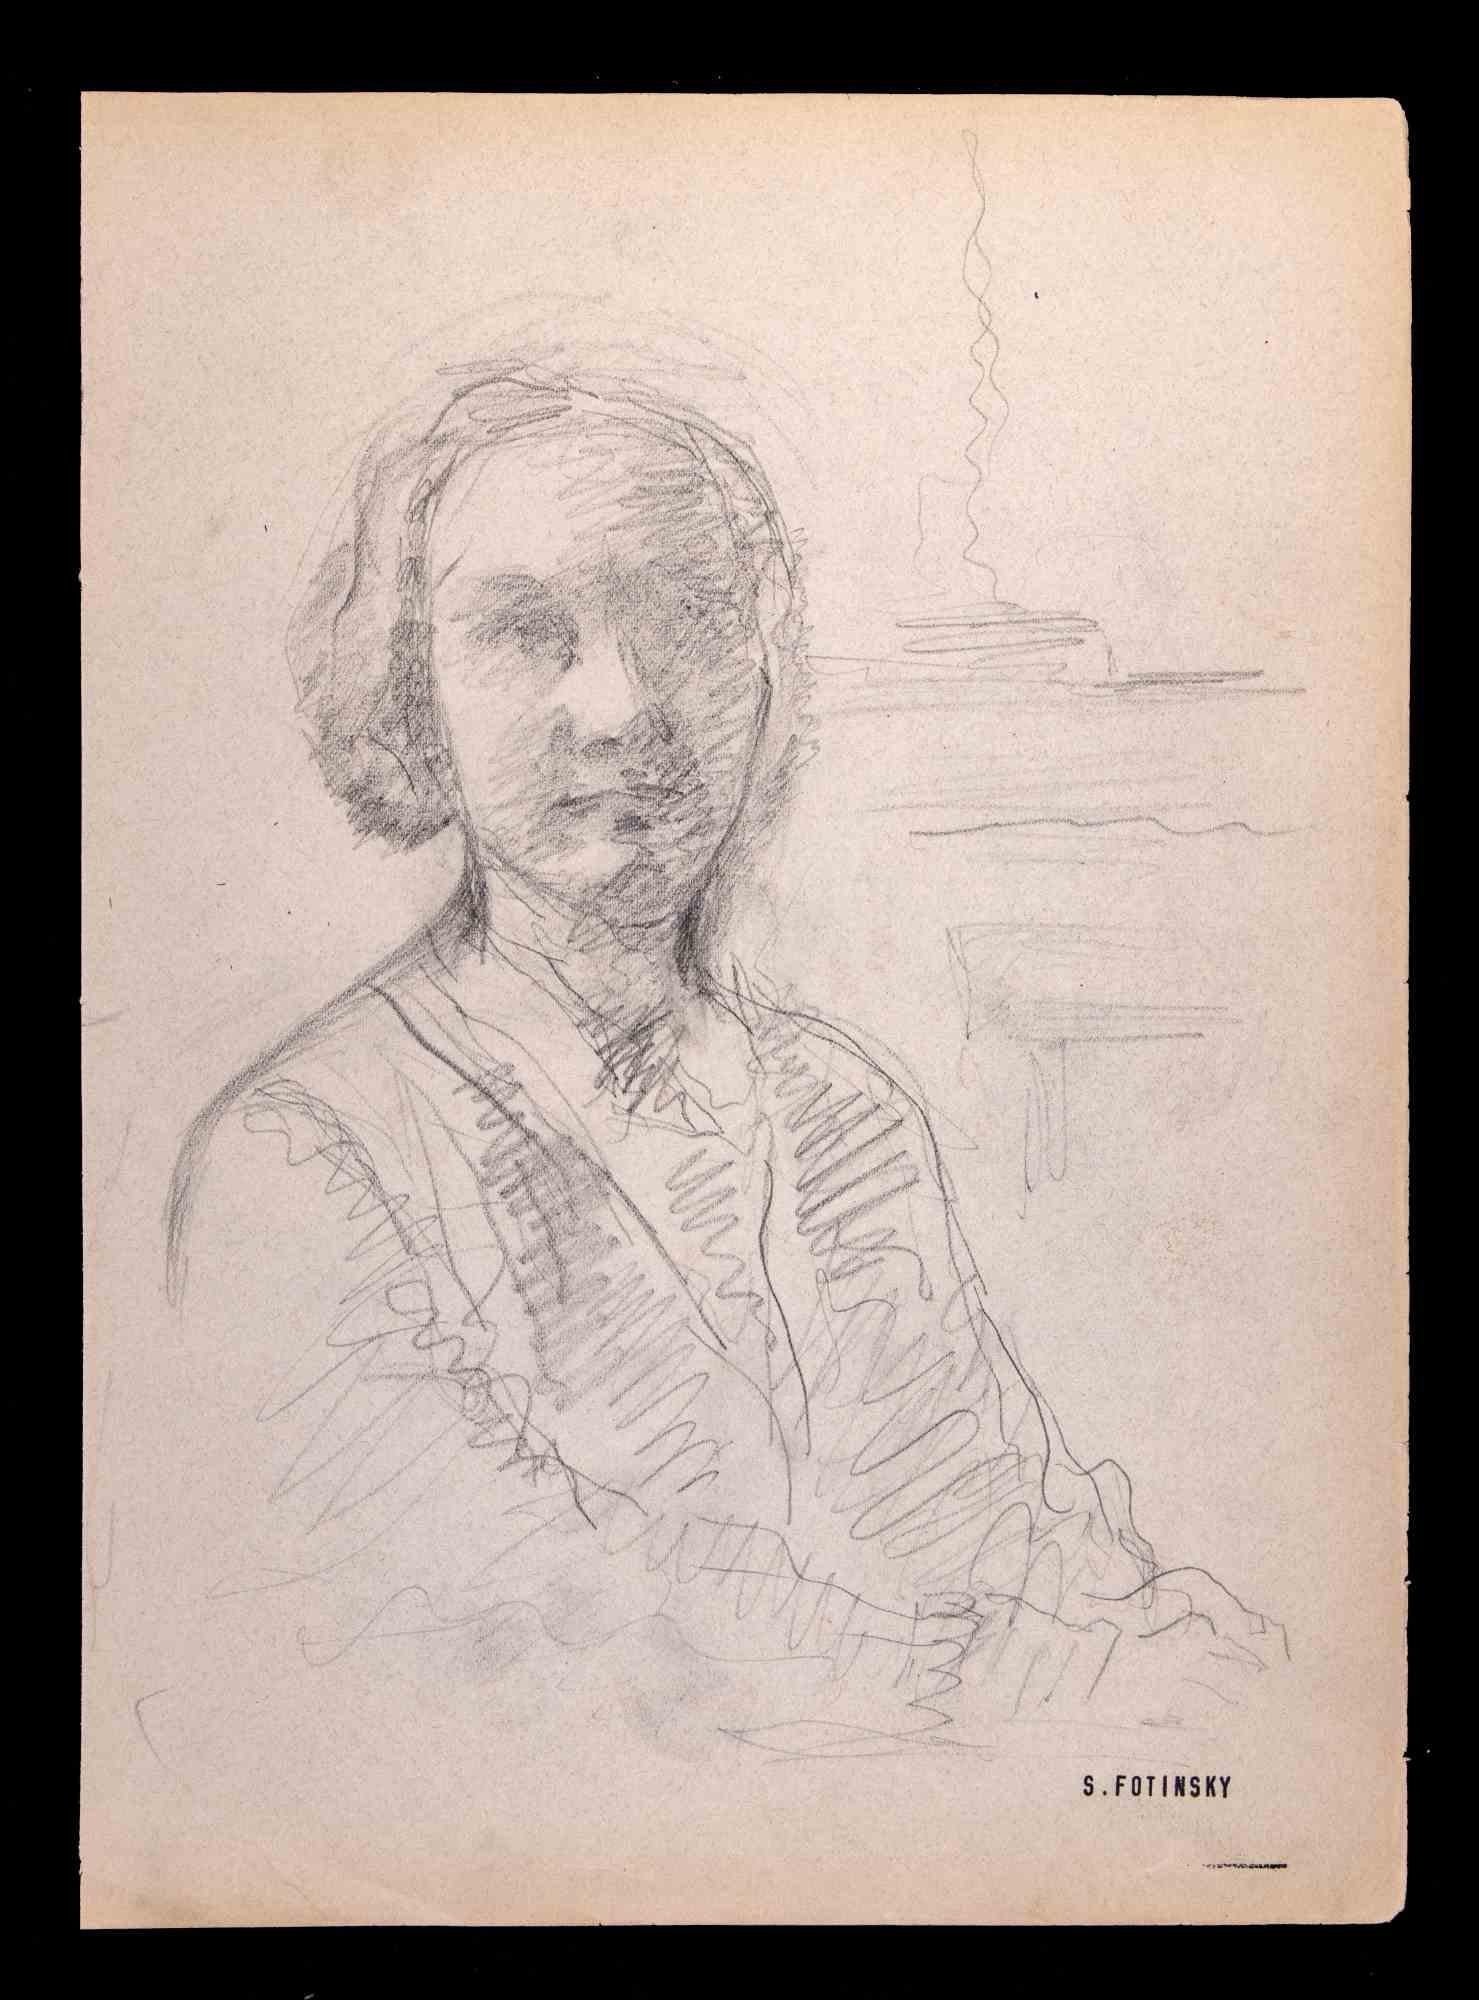 Portrait ist ein Kunstwerk von Serge Fotinsky aus dem Jahr 1947. 

Originalzeichnung, 27 x 19 cm.

Pad-Signatur unten rechts.

Guter Zustand außer Vergilbung des Blattes. 

 